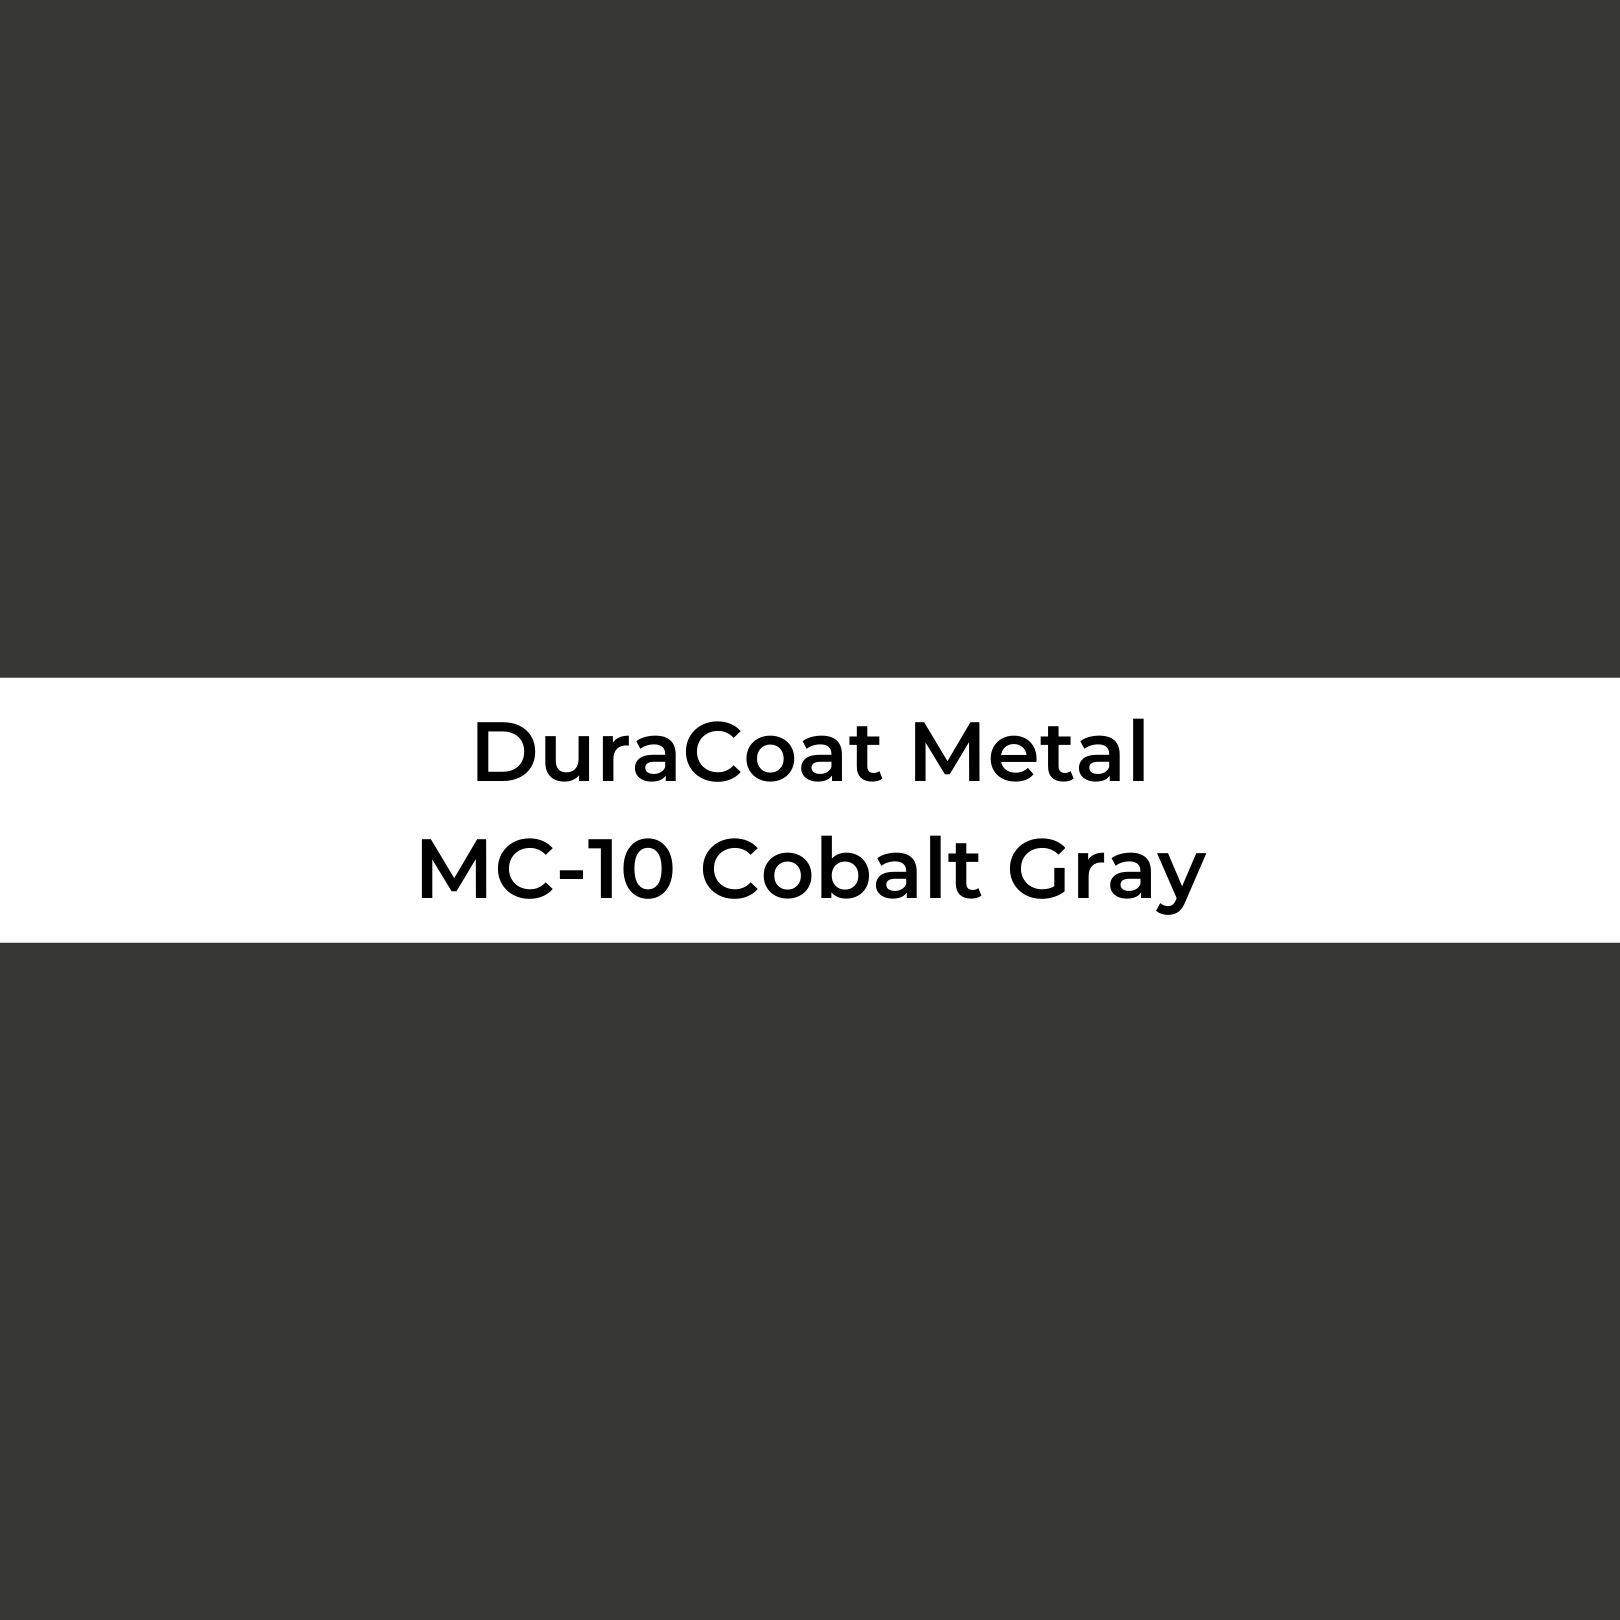 Cobalt Gray